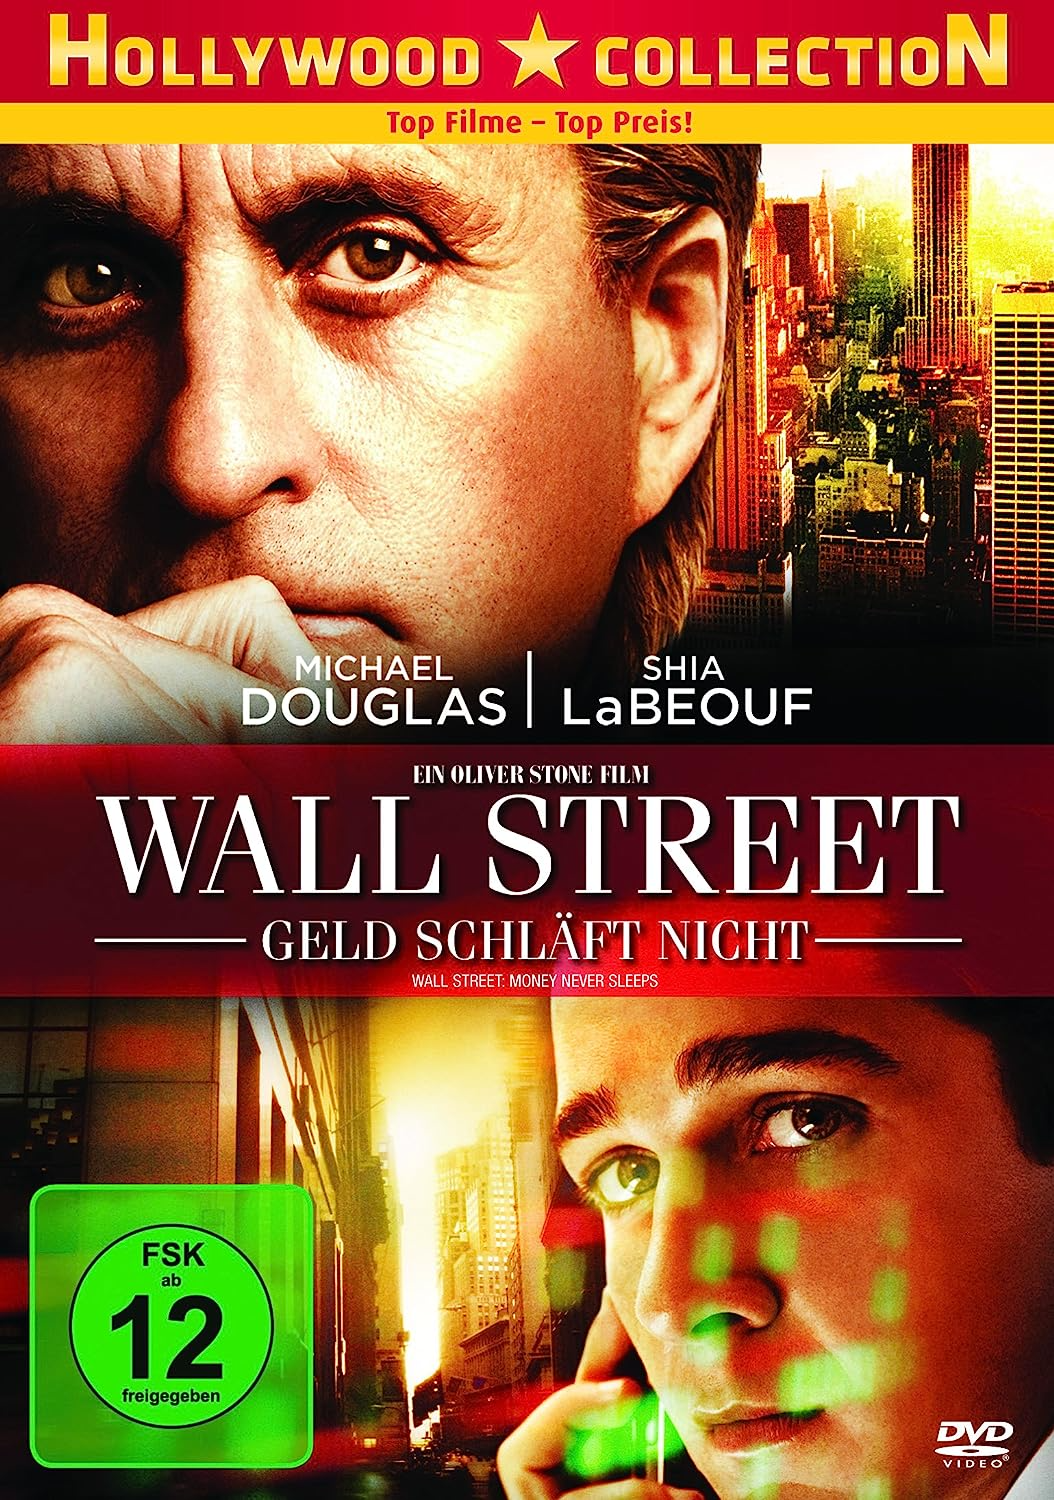 Wall Street Geld schlaft nicht